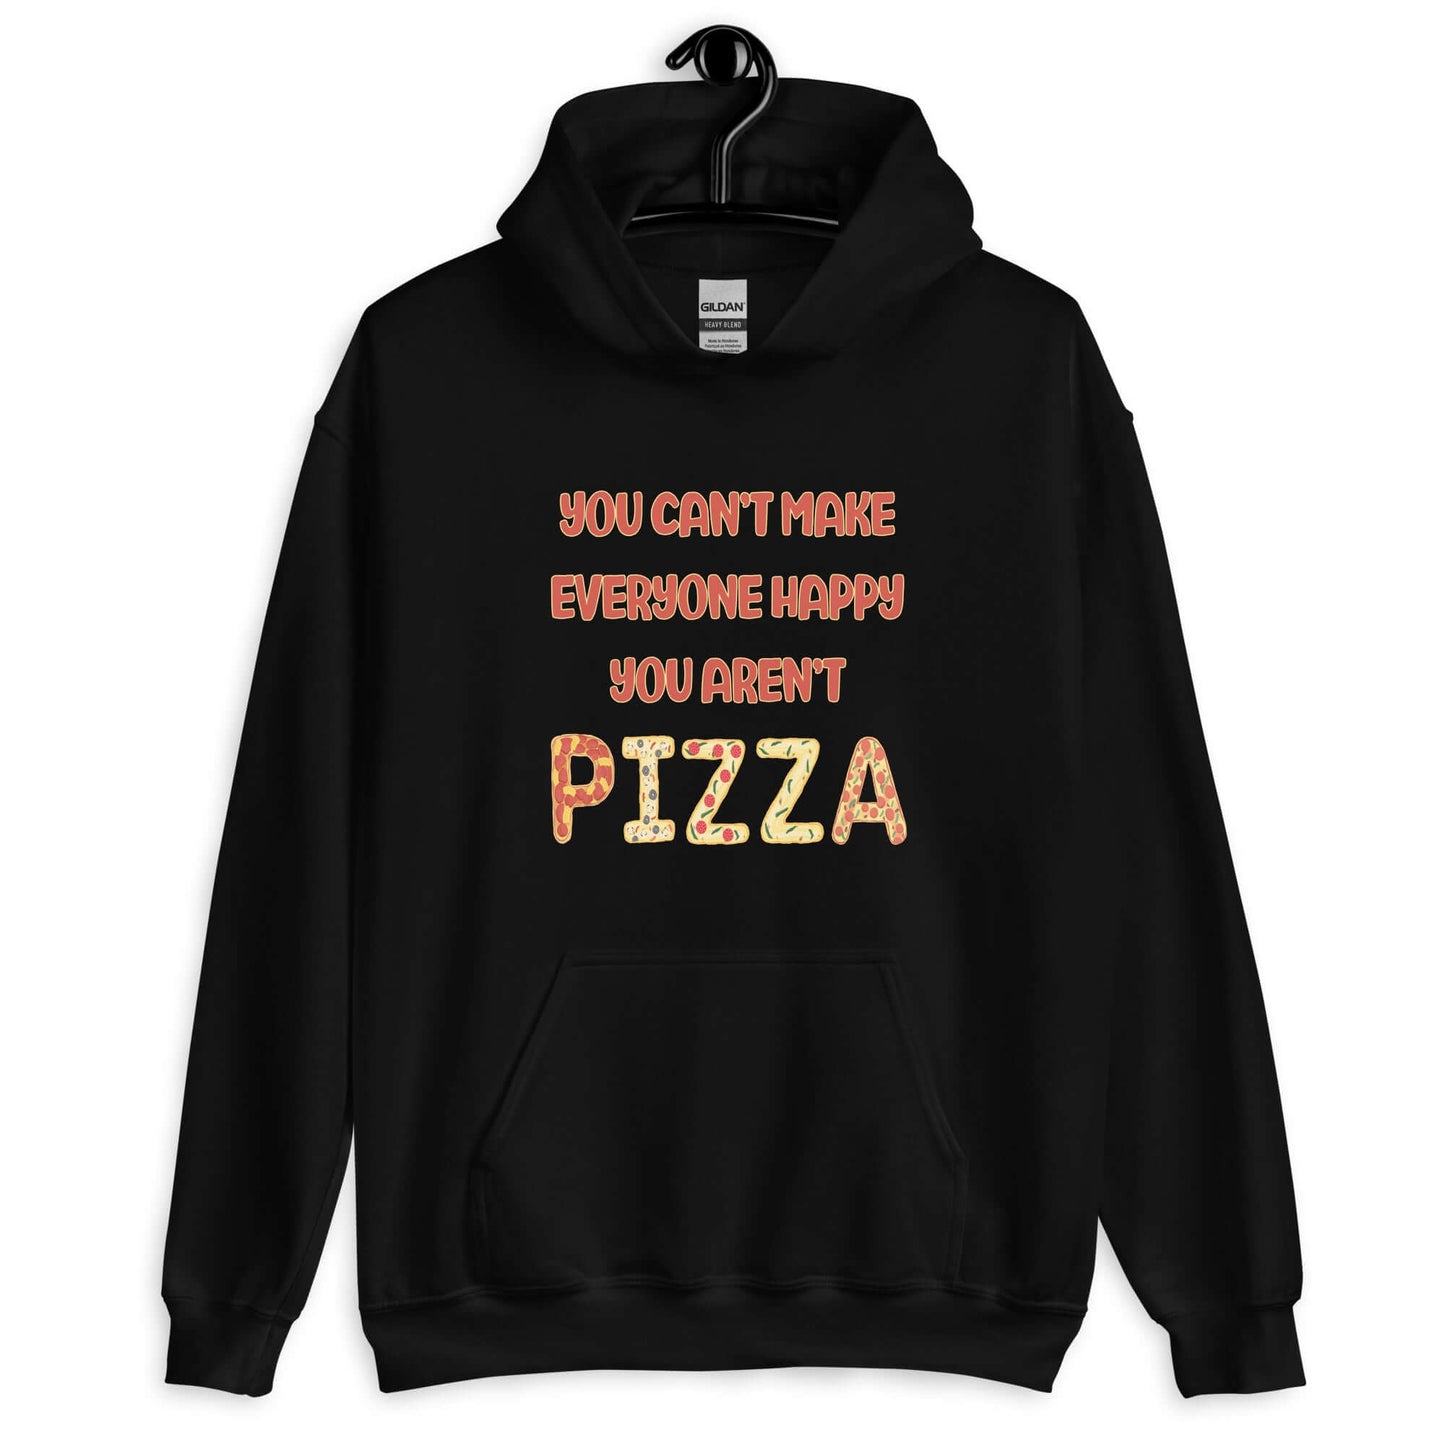 You aren't pizza funny hoodie sweatshirt